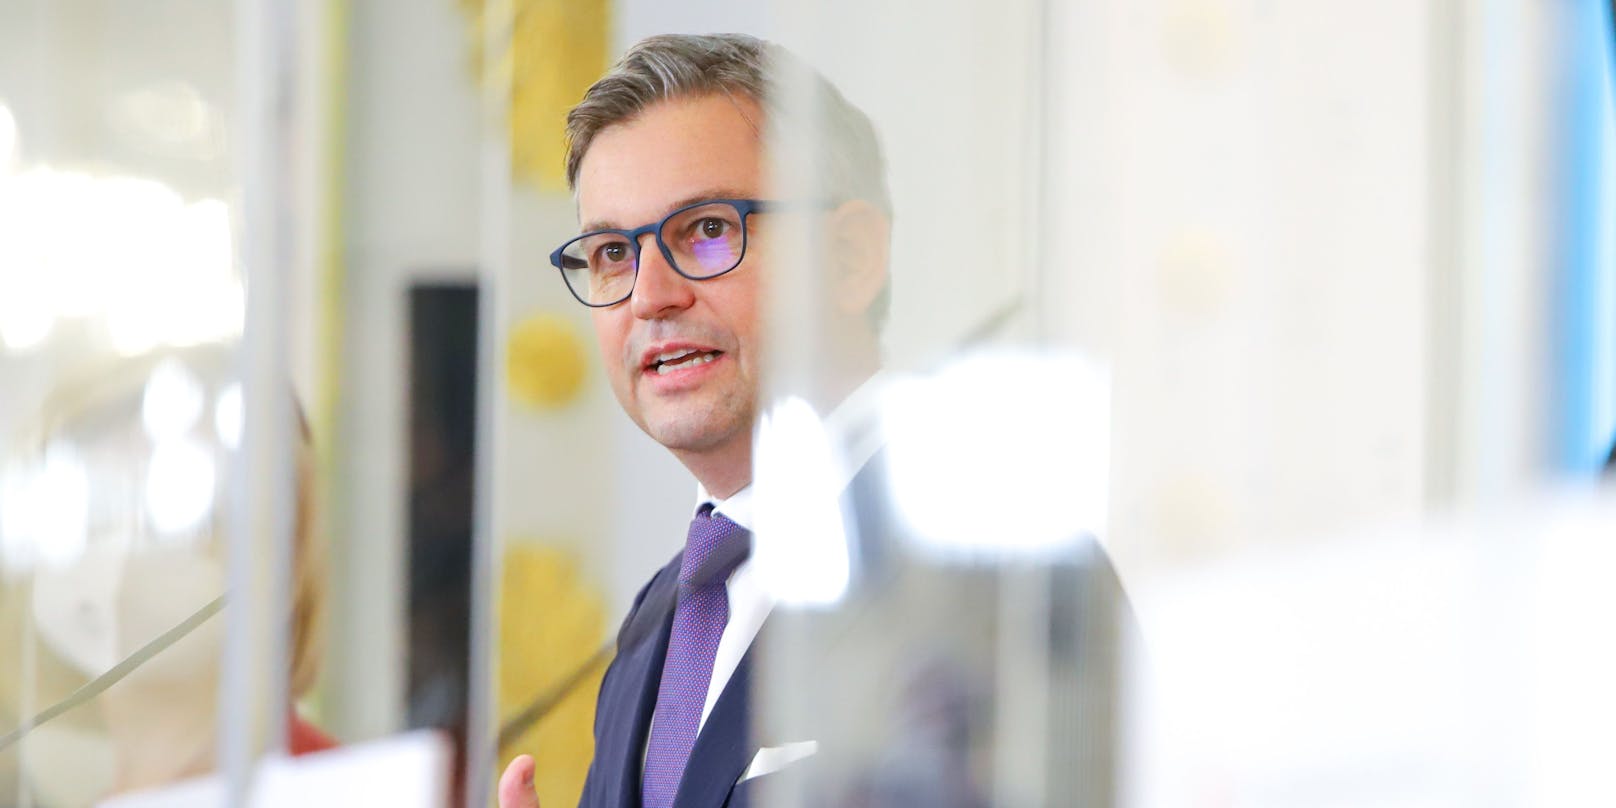 ÖVP-Finanzminister Magnus Brunner ist kostenpflichtigen Corona-Test gegenüber nicht abgeneigt.